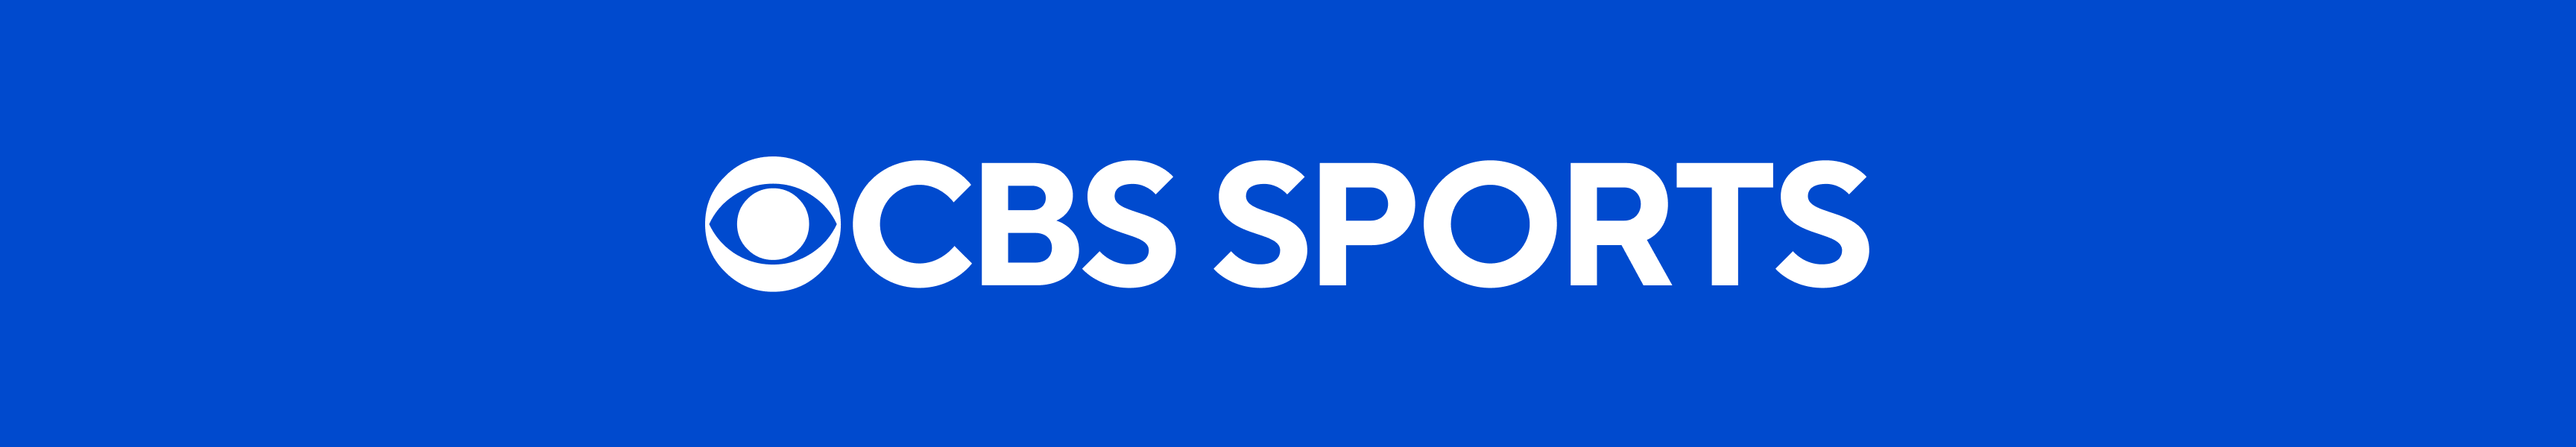 CBS Sports Heim & Büro